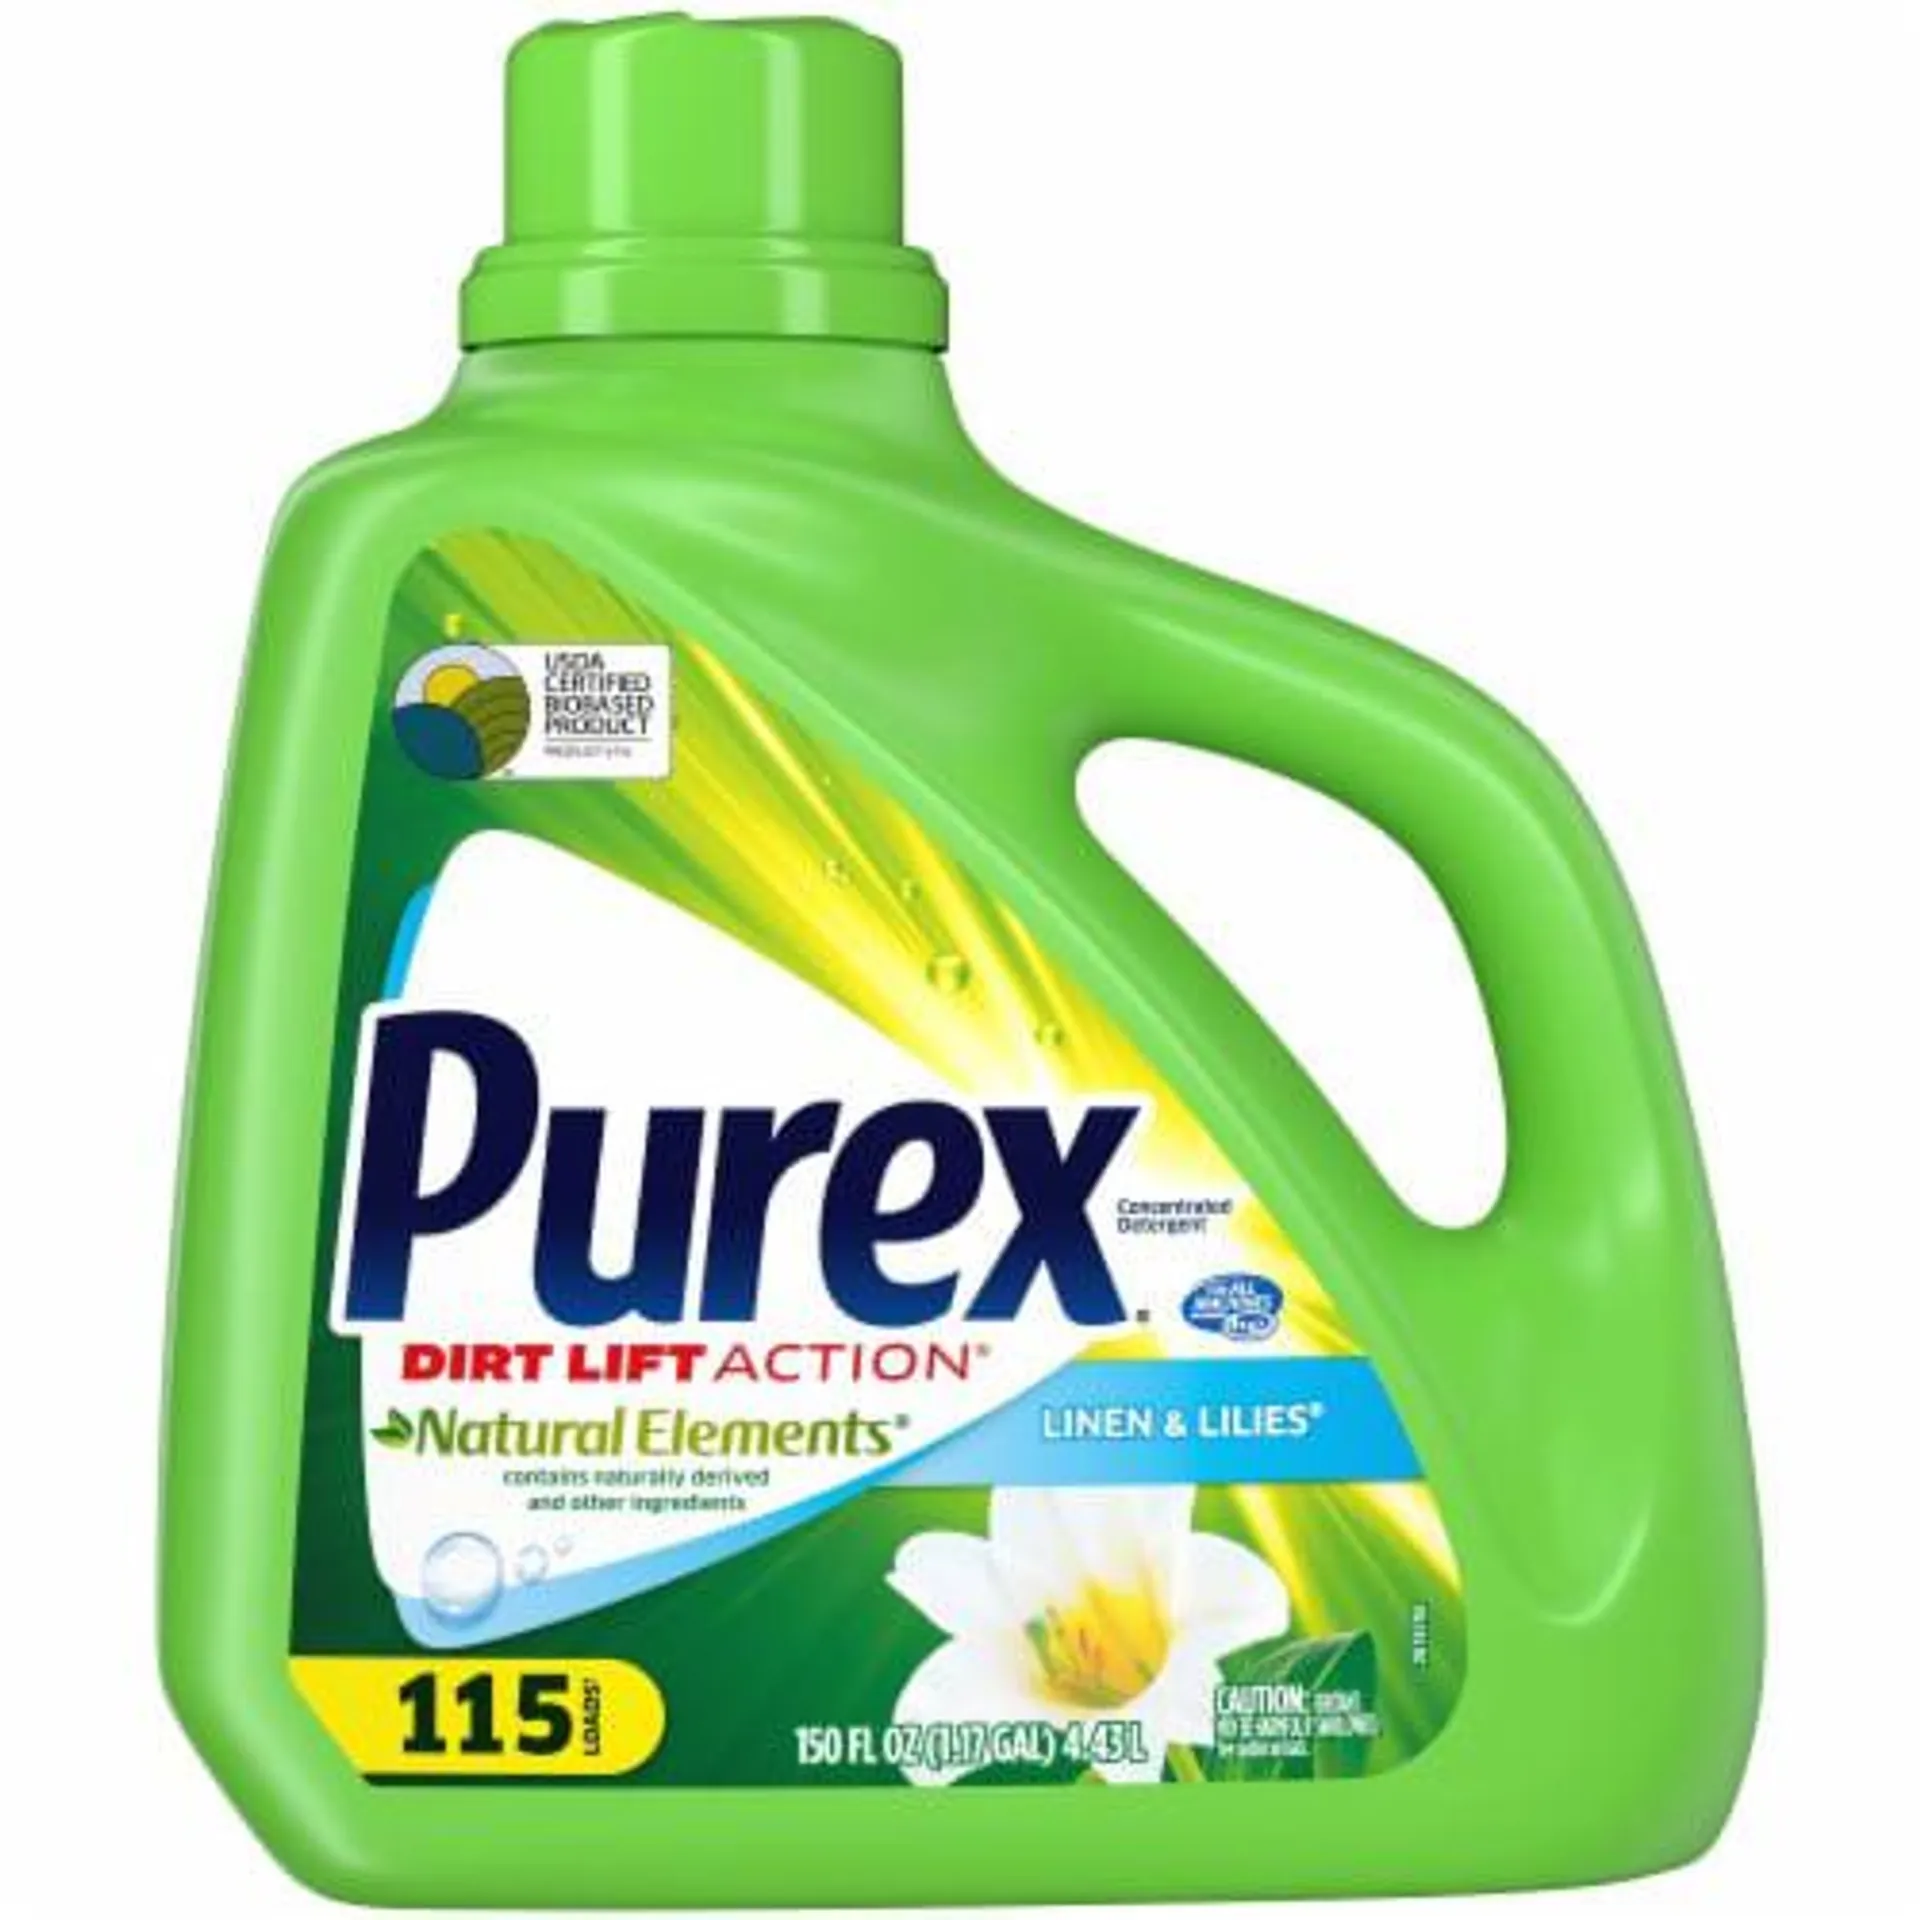 Purex Natural Elements Laundry Detergent